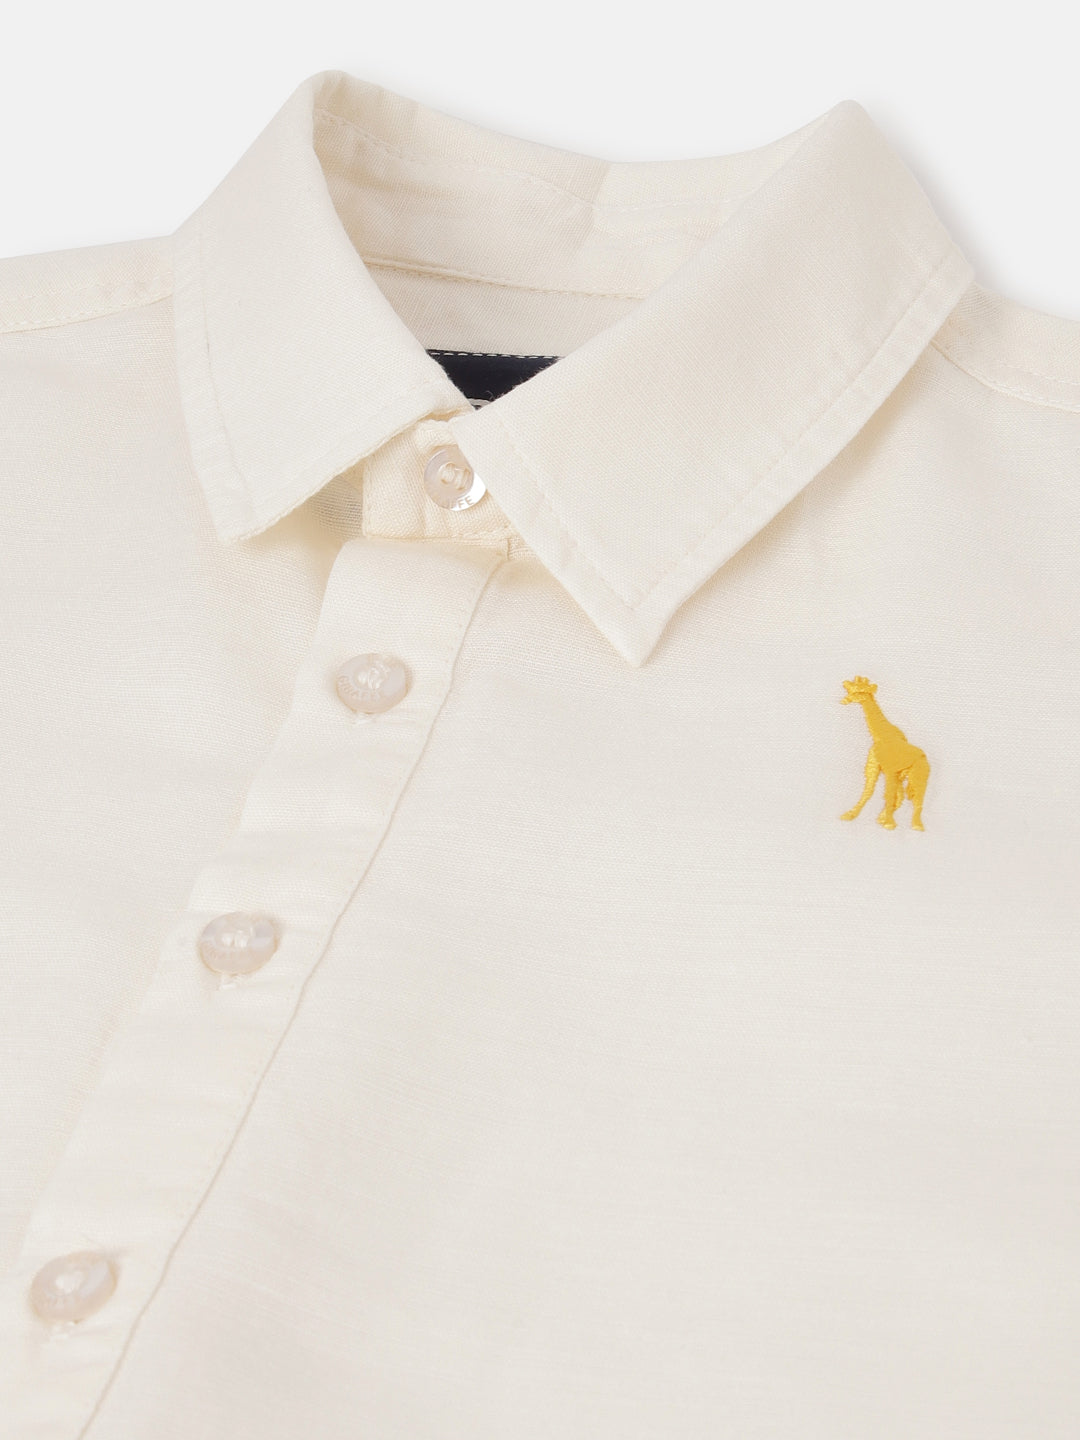 Blue Giraffe Boys Cream Solid Spread Collar Short Sleeves Shirt